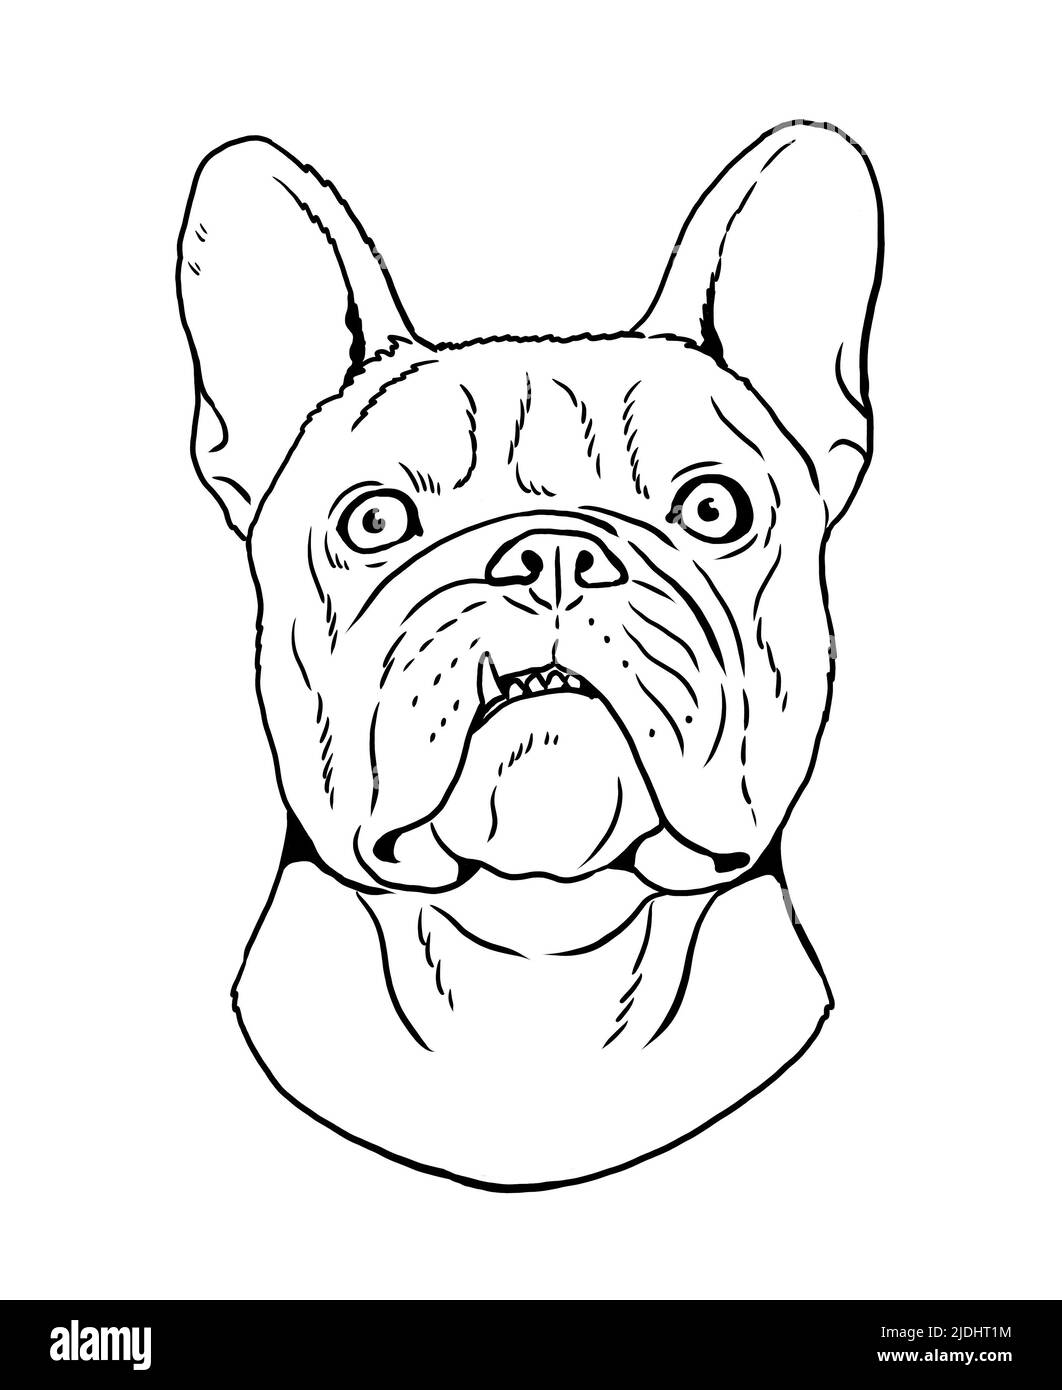 Joli dessin de chien de taureau français. Illustration isolée faite à la main avec le chien. Banque D'Images